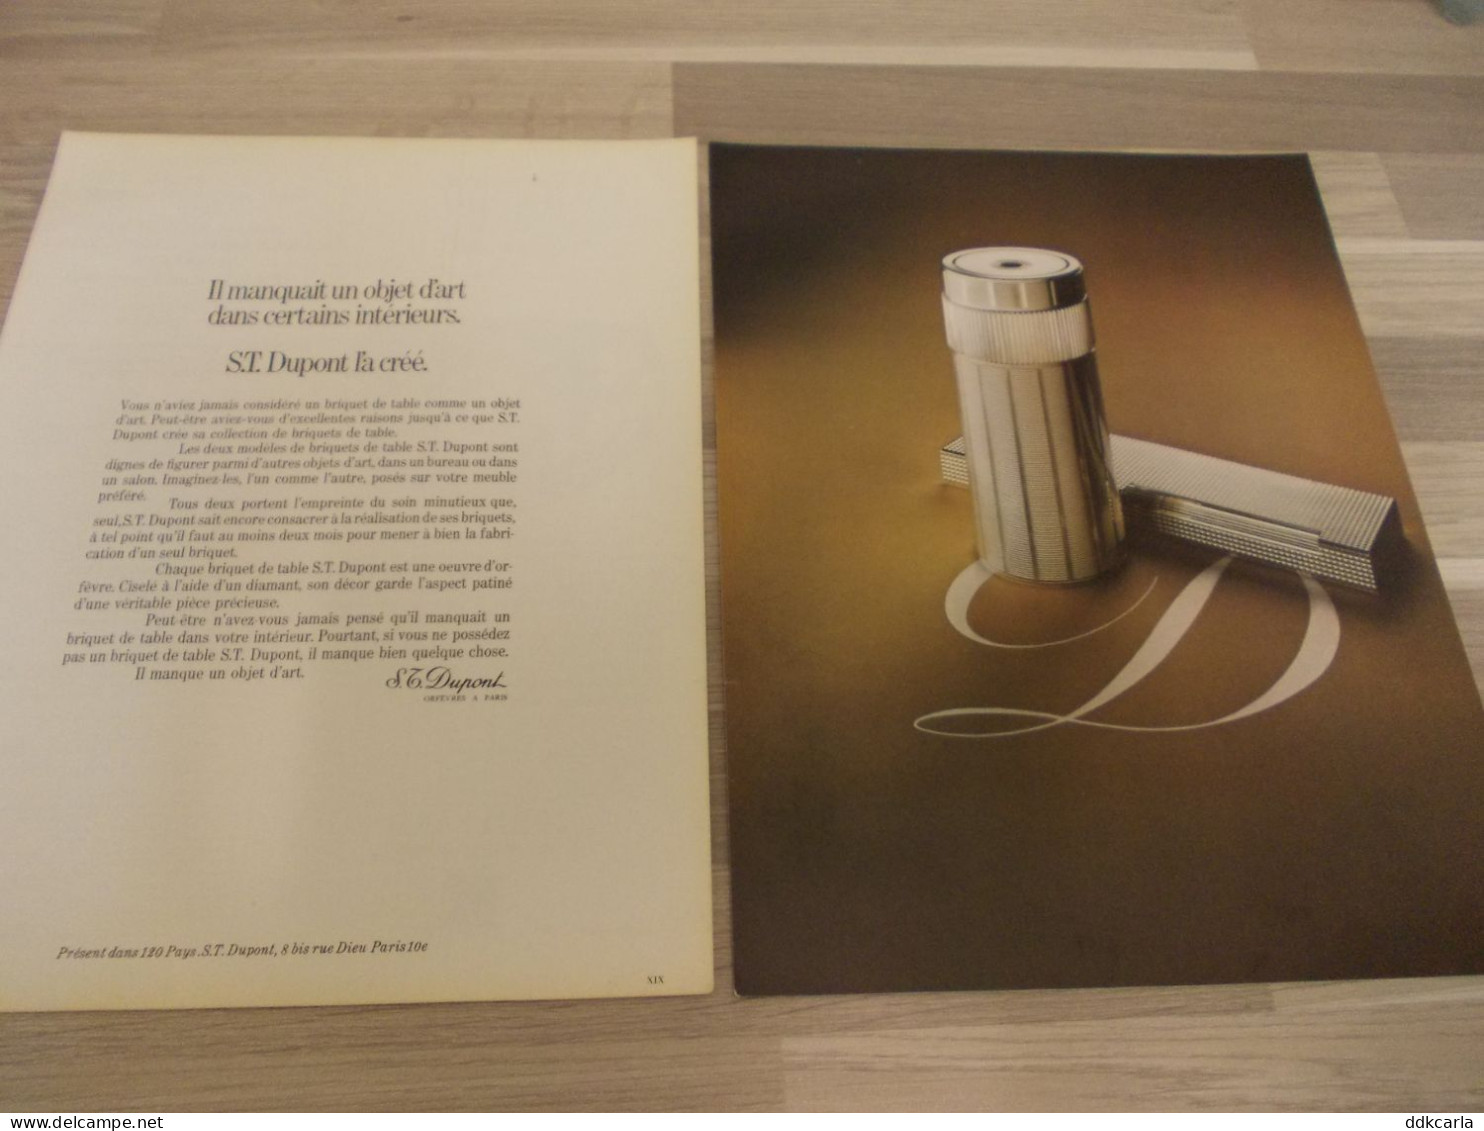 Reclame Advertentie Uit Oud Tijdschrift 1973 - Briquet De Table S.T. Dupont - Werbung